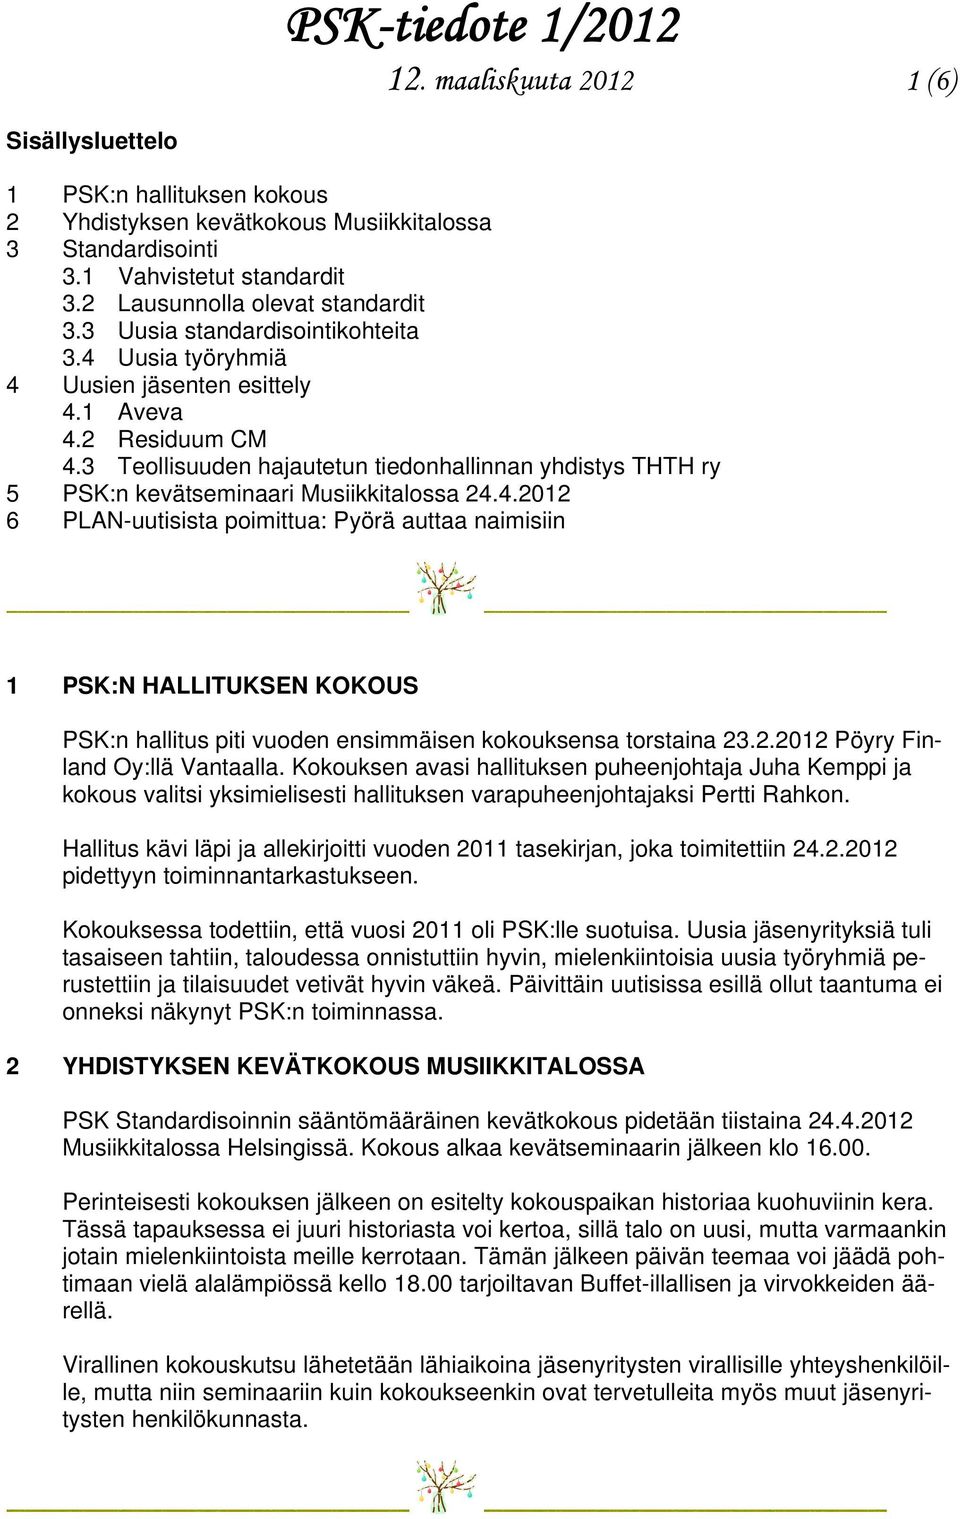 3 Teollisuuden hajautetun tiedonhallinnan yhdistys THTH ry 5 PSK:n kevätseminaari Musiikkitalossa 24.